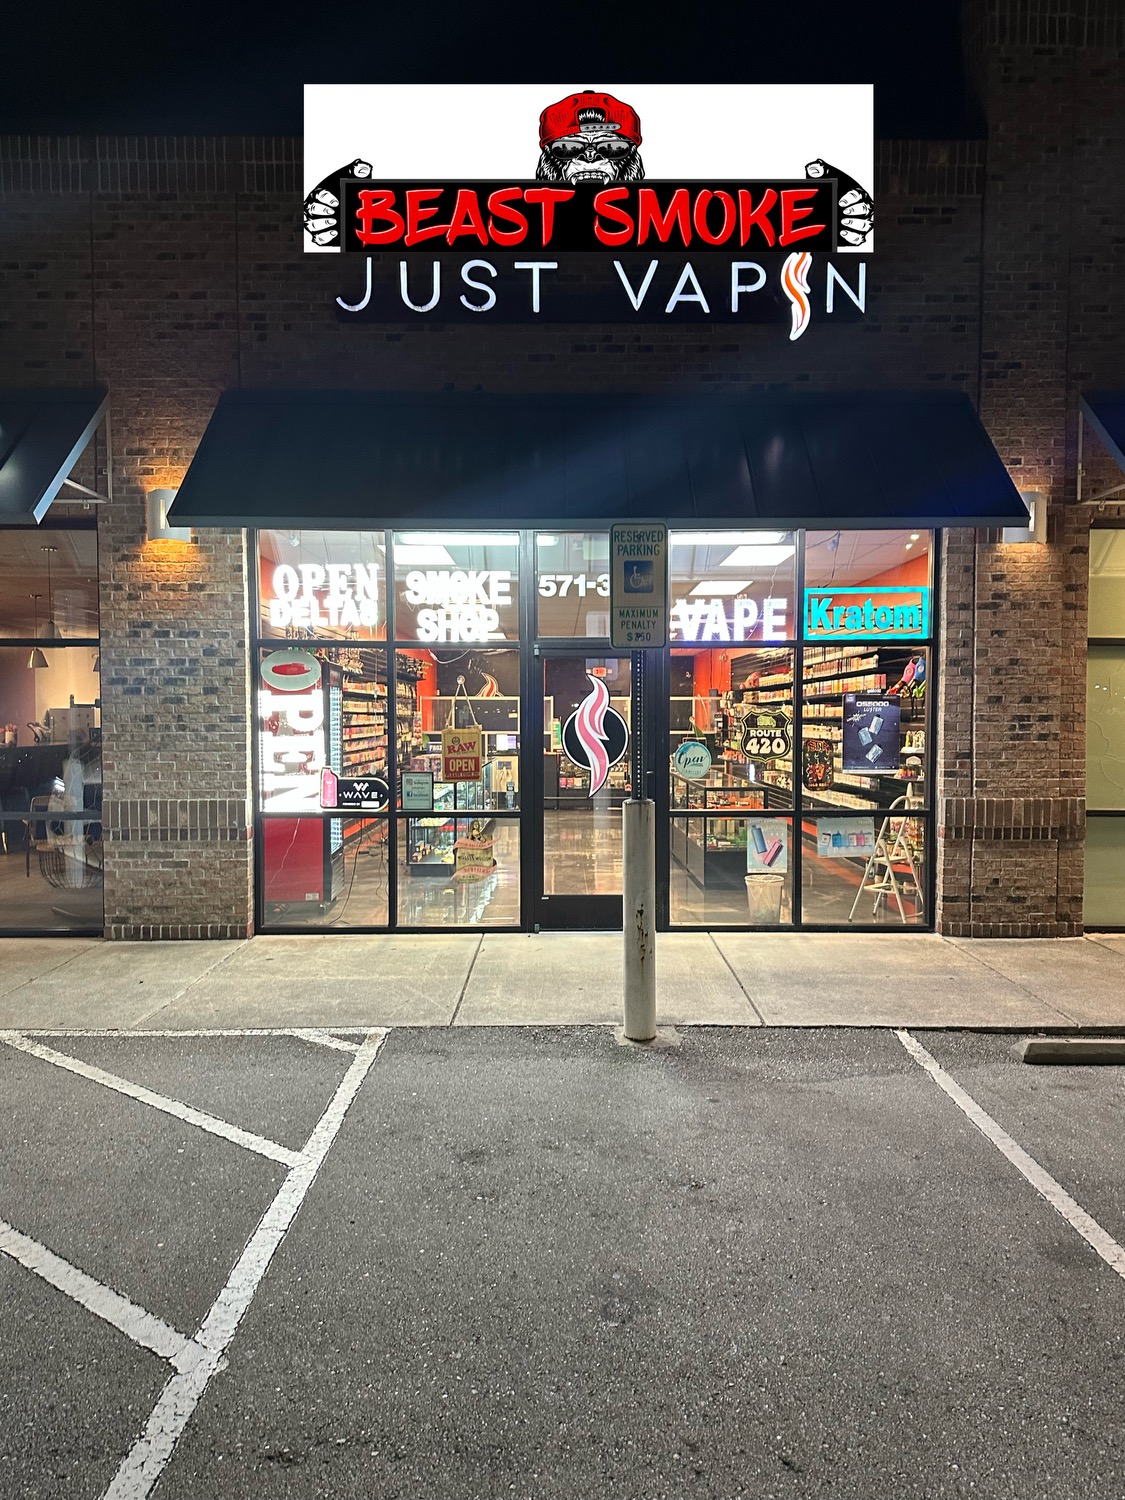 Just Vapin / Beast smoke - Smoke shop CBD